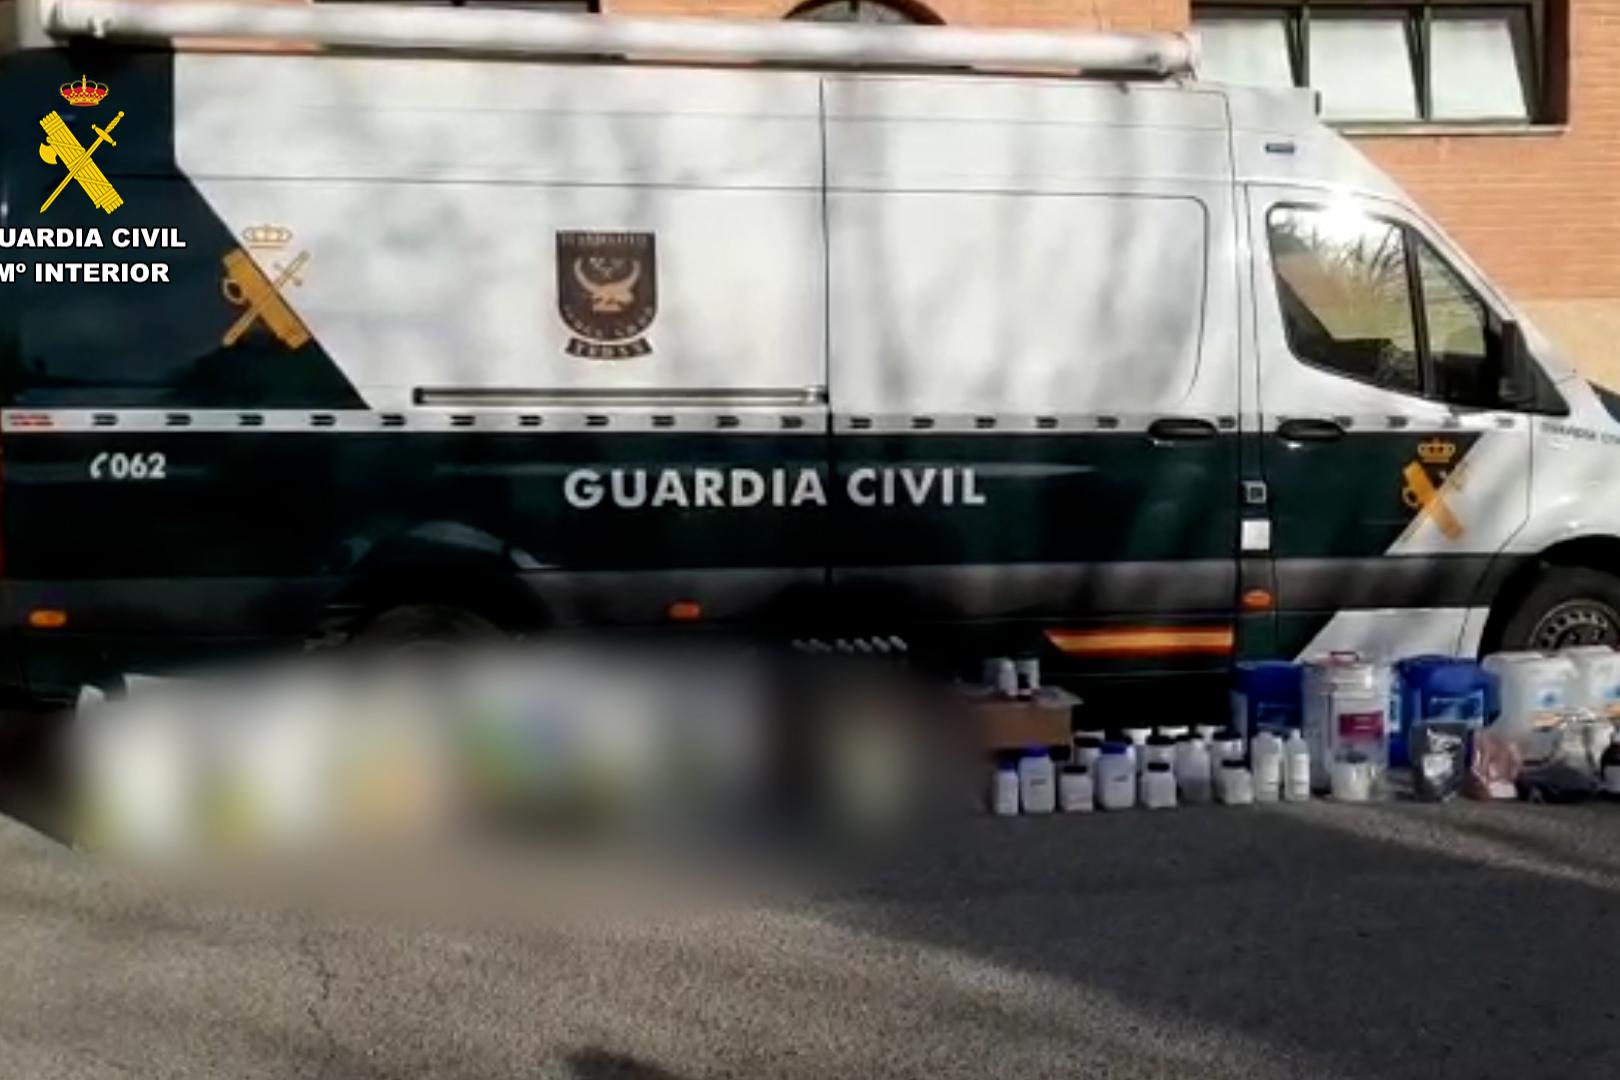 Imagen de una furgoneta de la guardia civil con la exposición de los 468 kilos entre precursores y sustancias químicas, destinado a fabricar explosivos